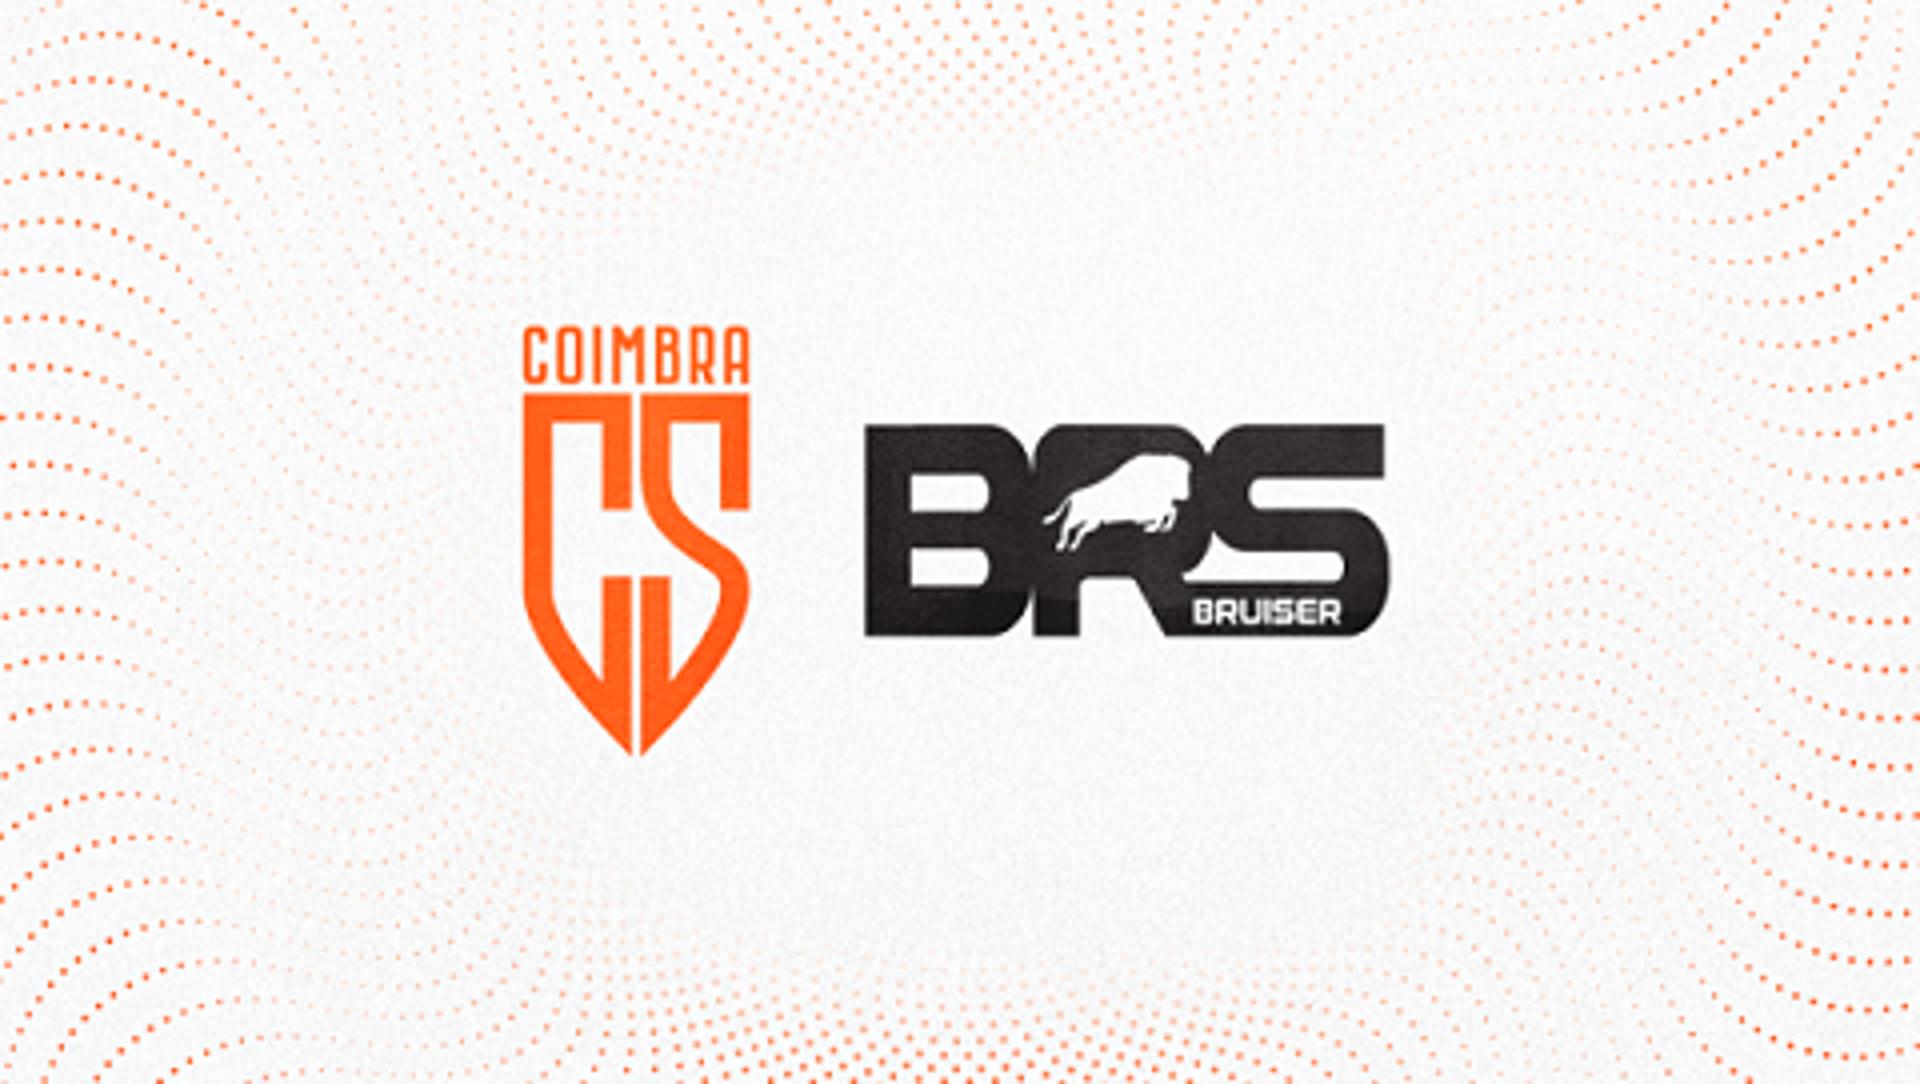 O Coimbra terá a parceria da Bruiser nesta temporada 2022